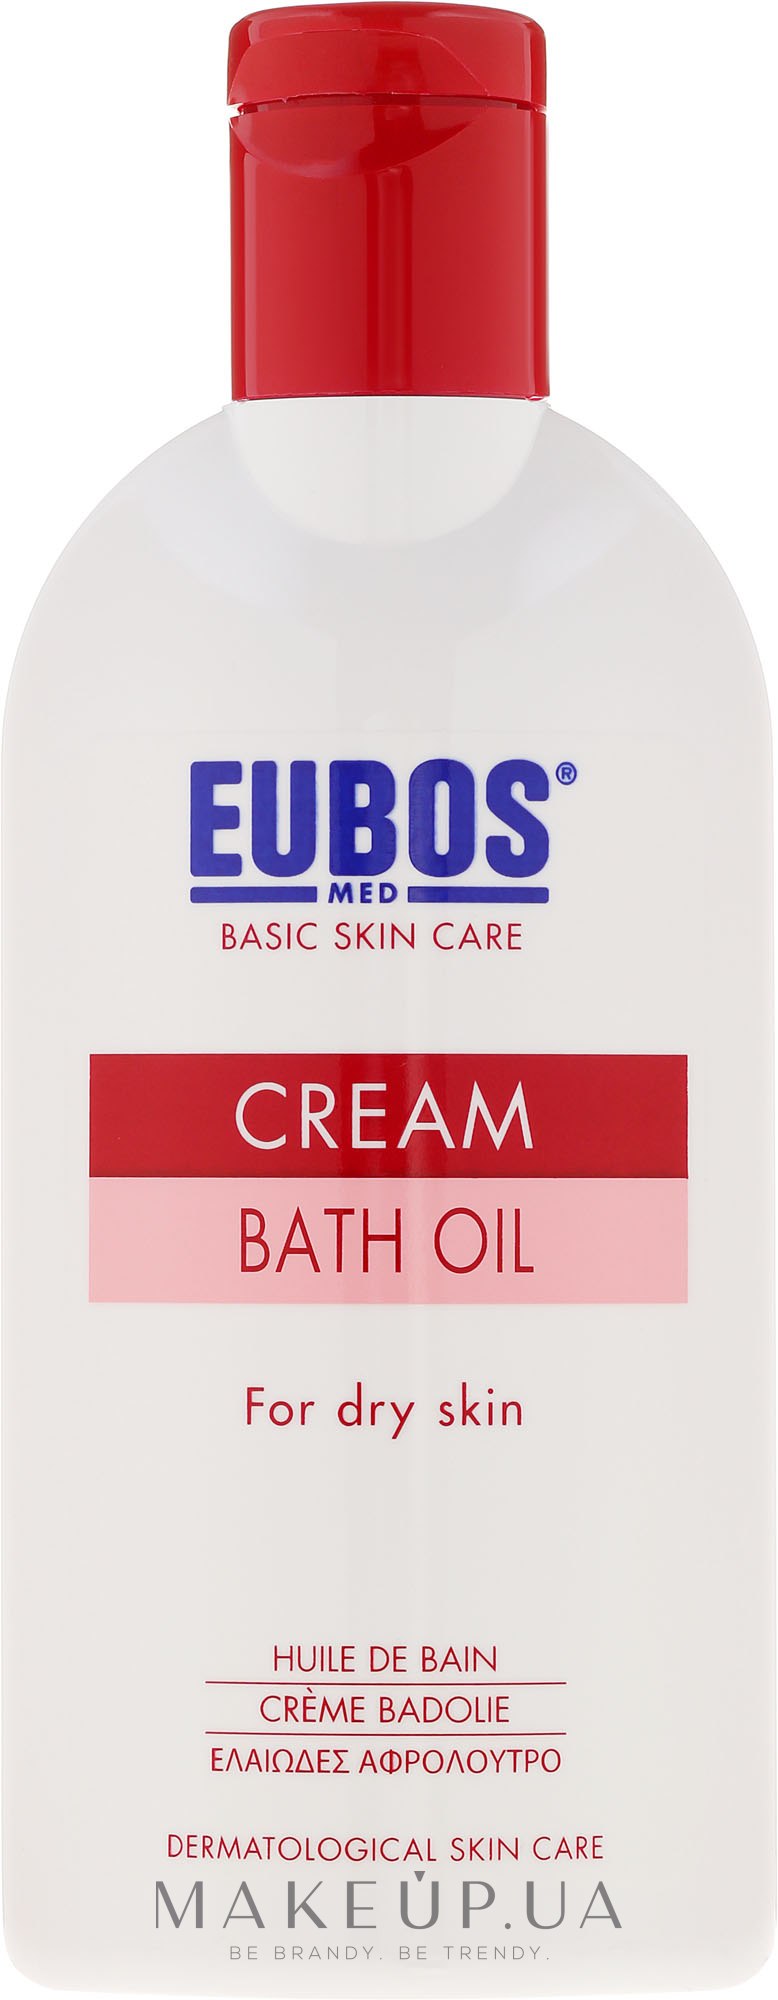 Олія для ванни - Eubos Med Basic Skin Care Cream Bath Oil For Dry Skin — фото 200ml